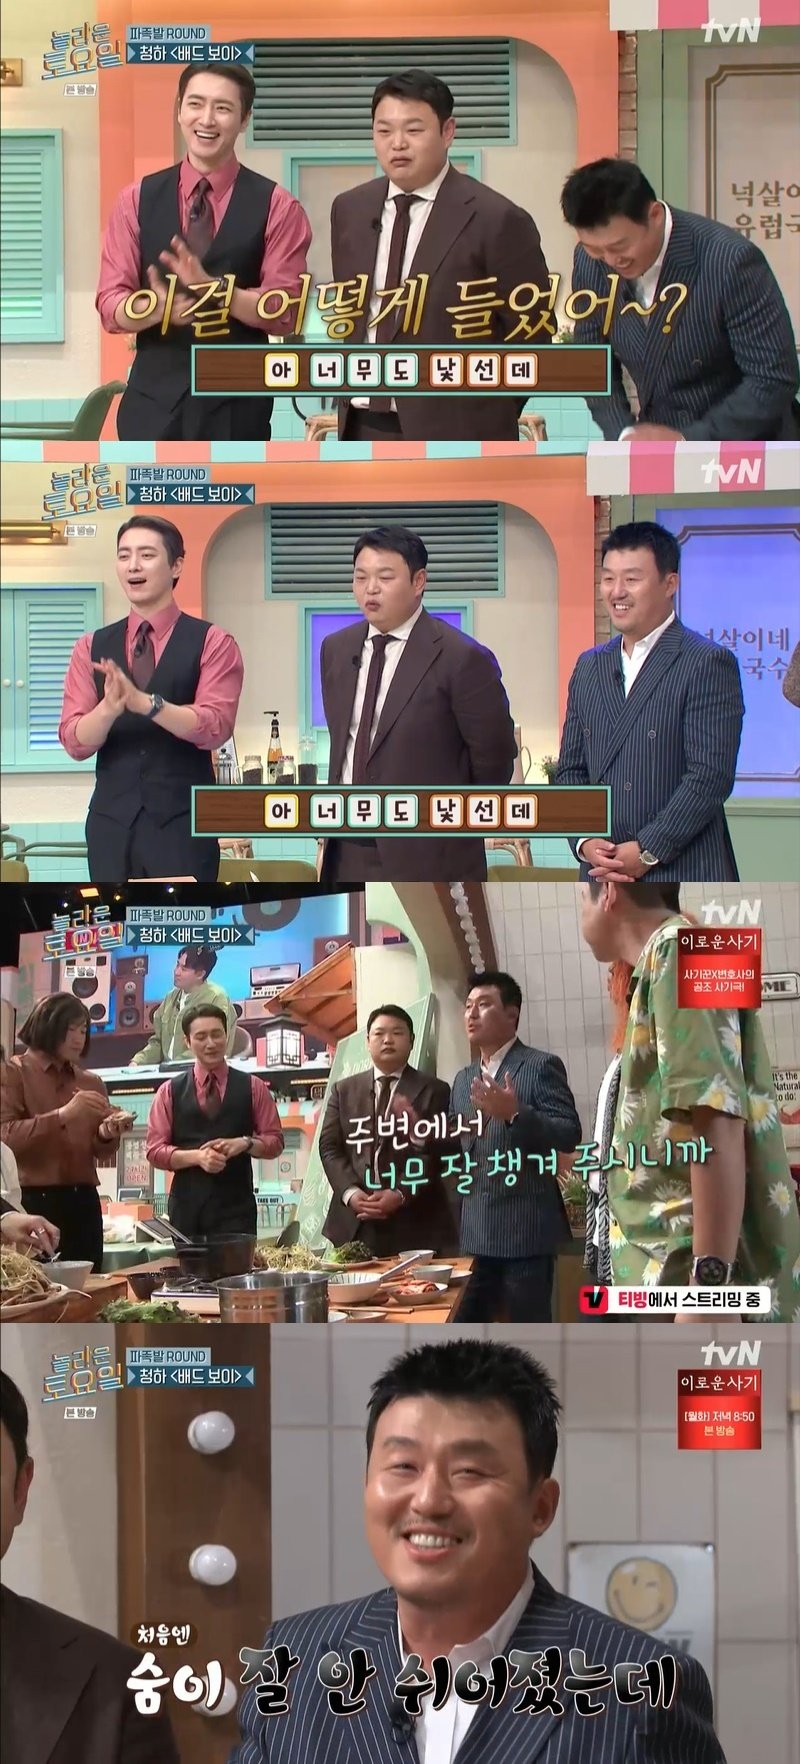 '놀라운 토요일' 이준혁·김민재·고규필, 반전 신화 쓴 '놀보'들 [RE:TV]